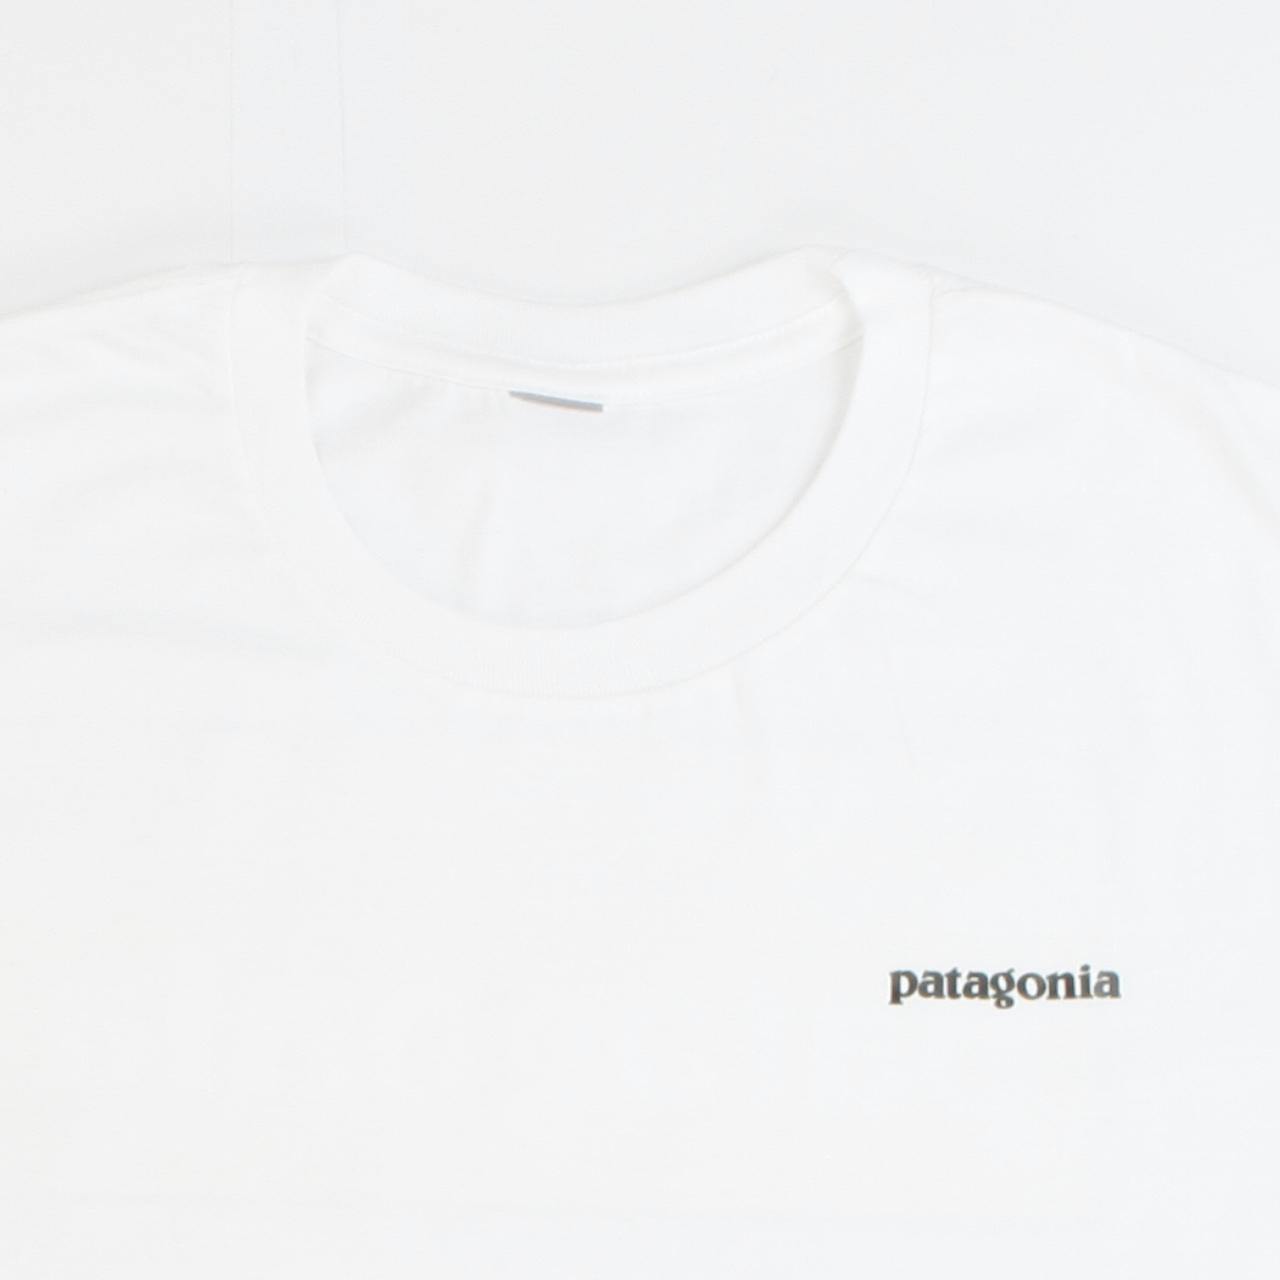 Patagonia T Shirt (S) - dream vintage